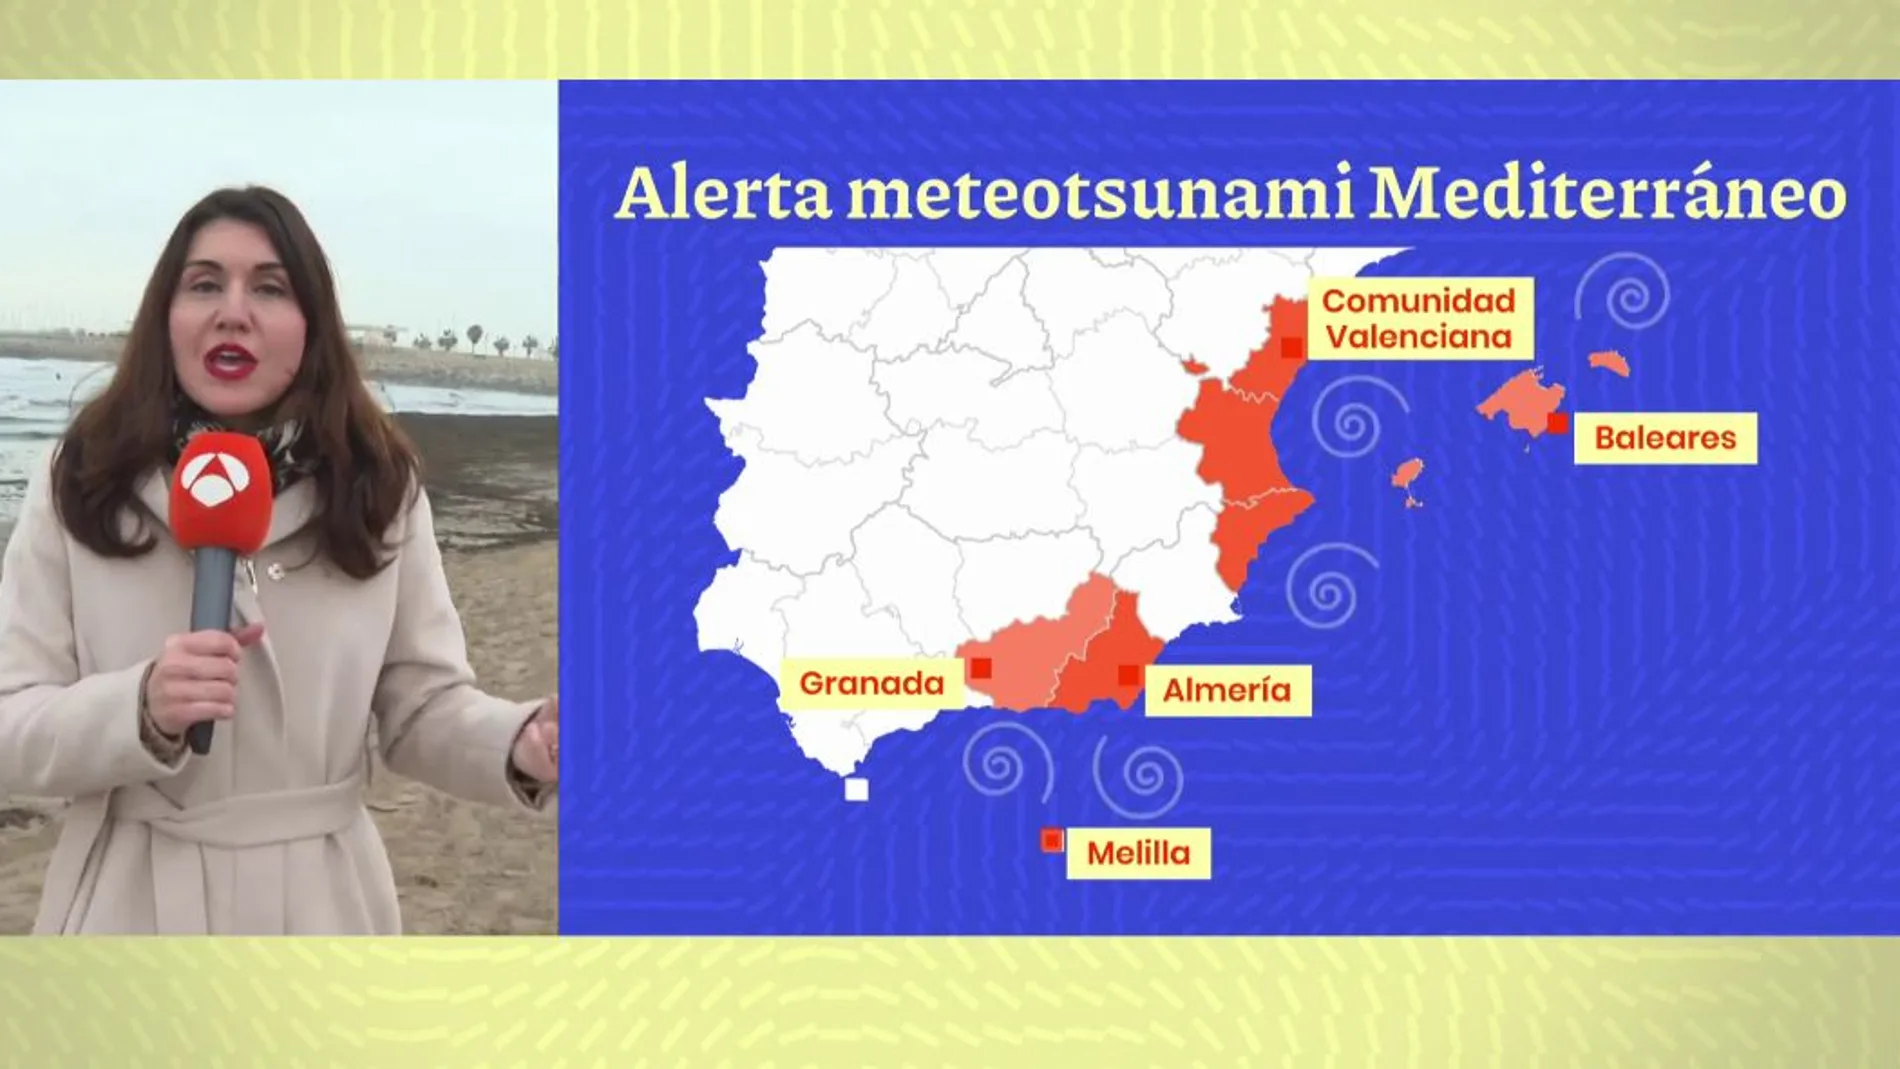 ¿Qué es el meteotsunami del Mediterráneo?